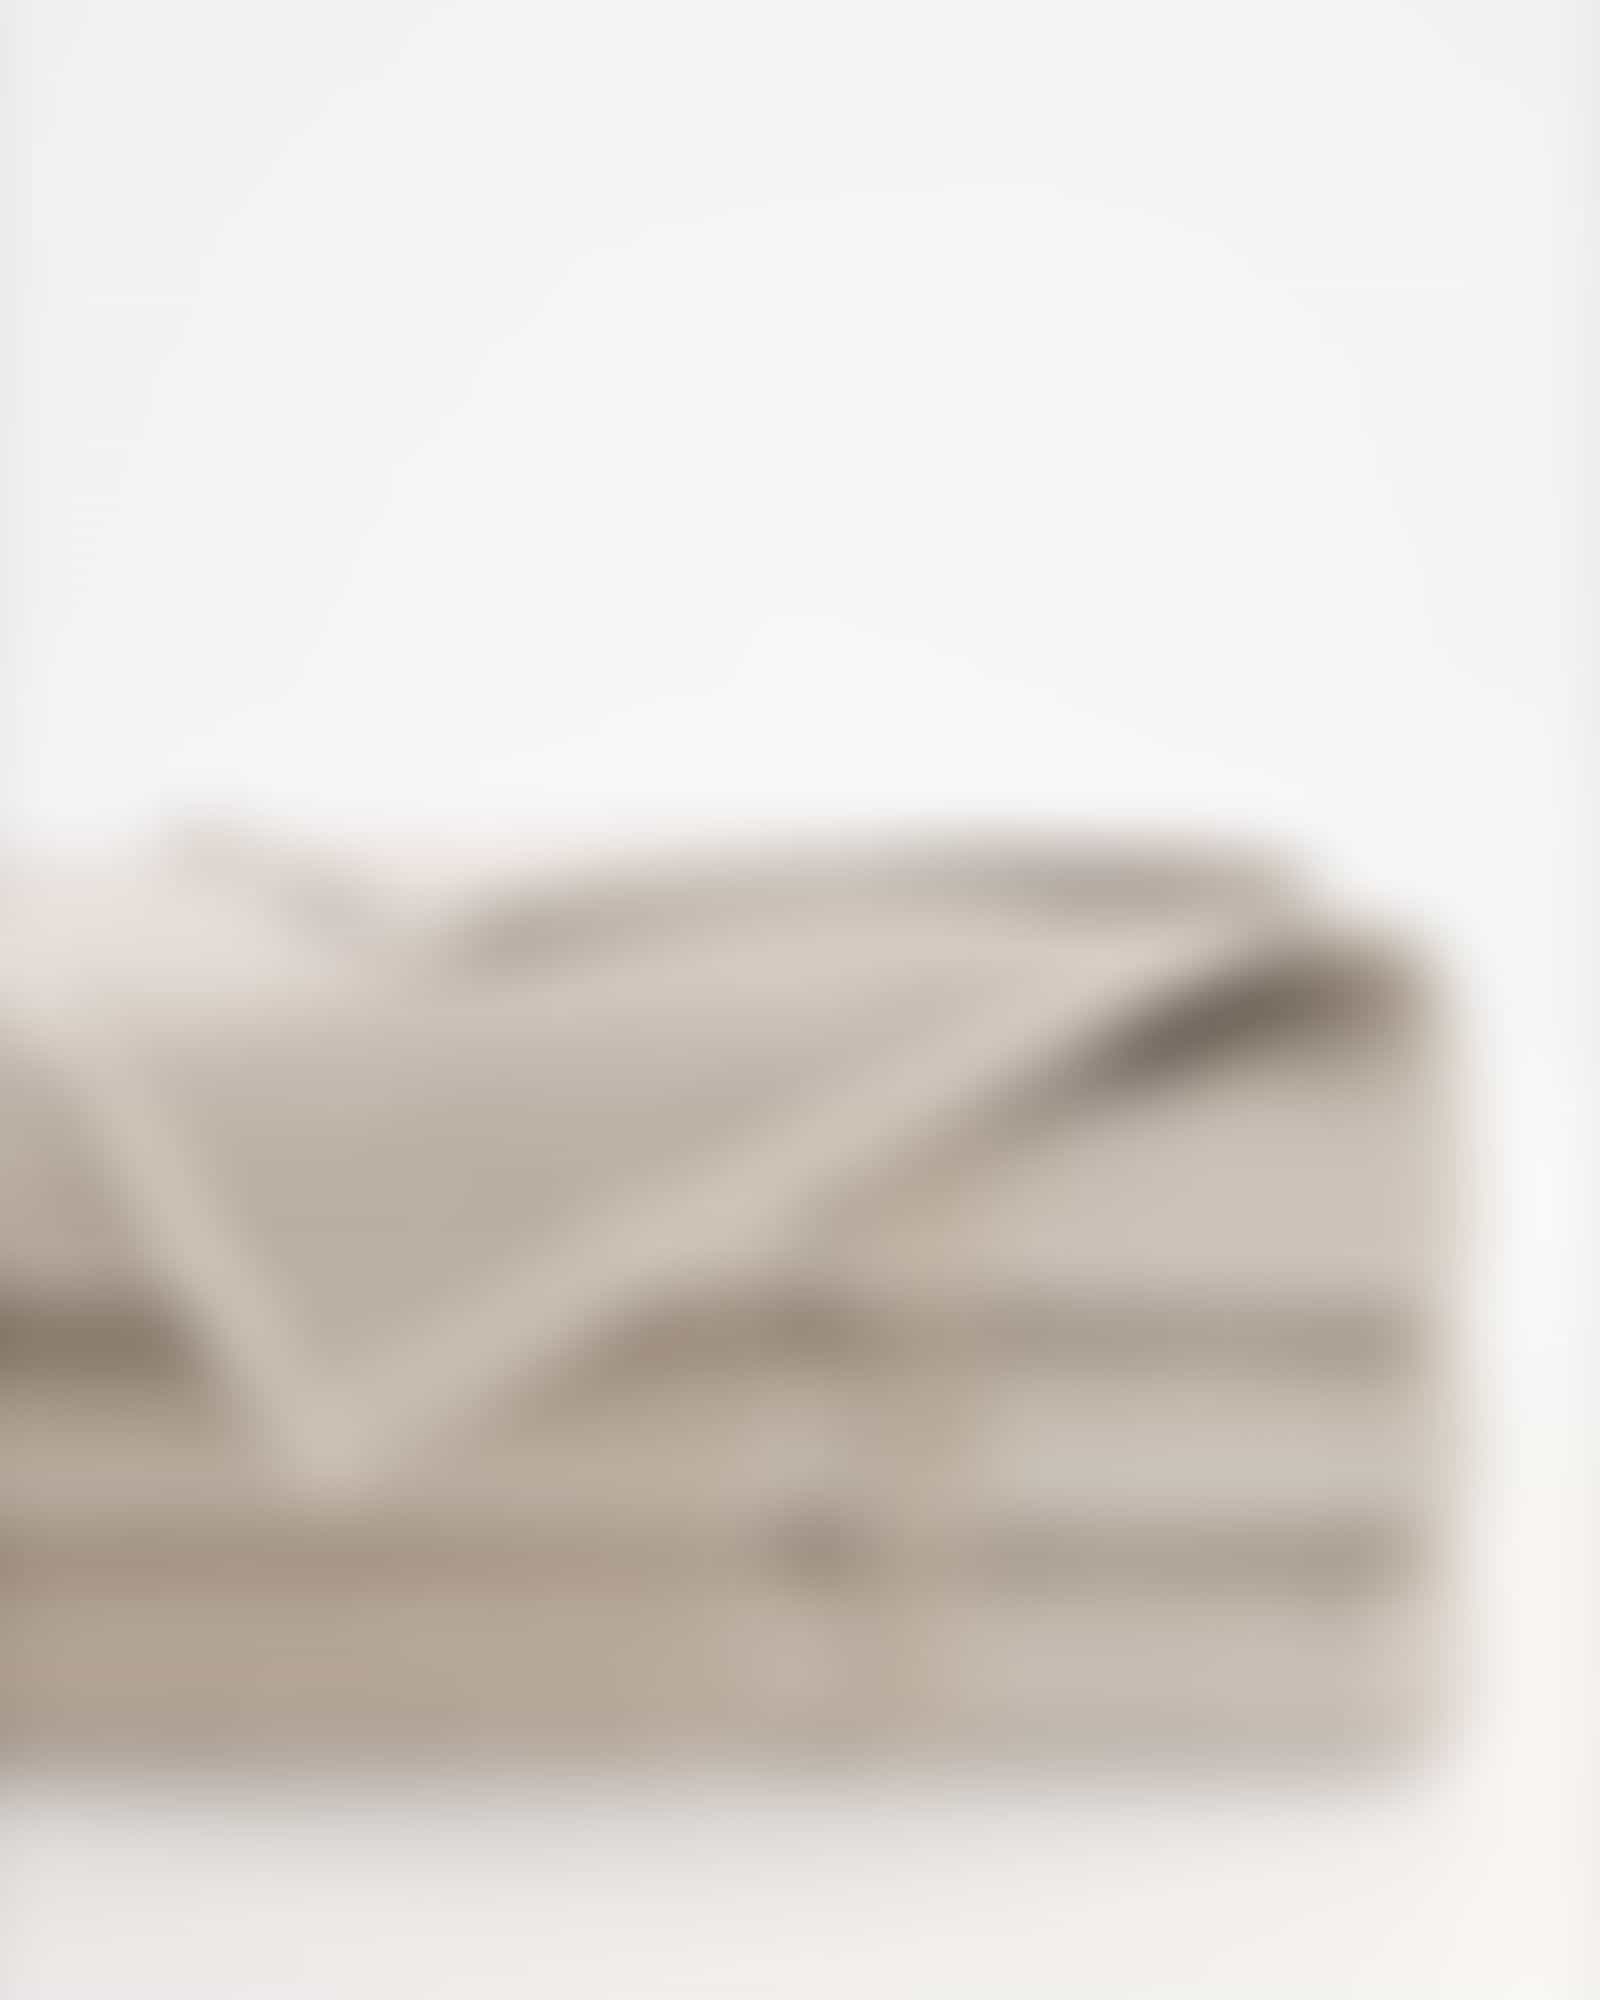 Möve Handtücher Wellbeing Perlstruktur - Farbe: cashmere - 713 - Seiflappen 30x30 cm Detailbild 2